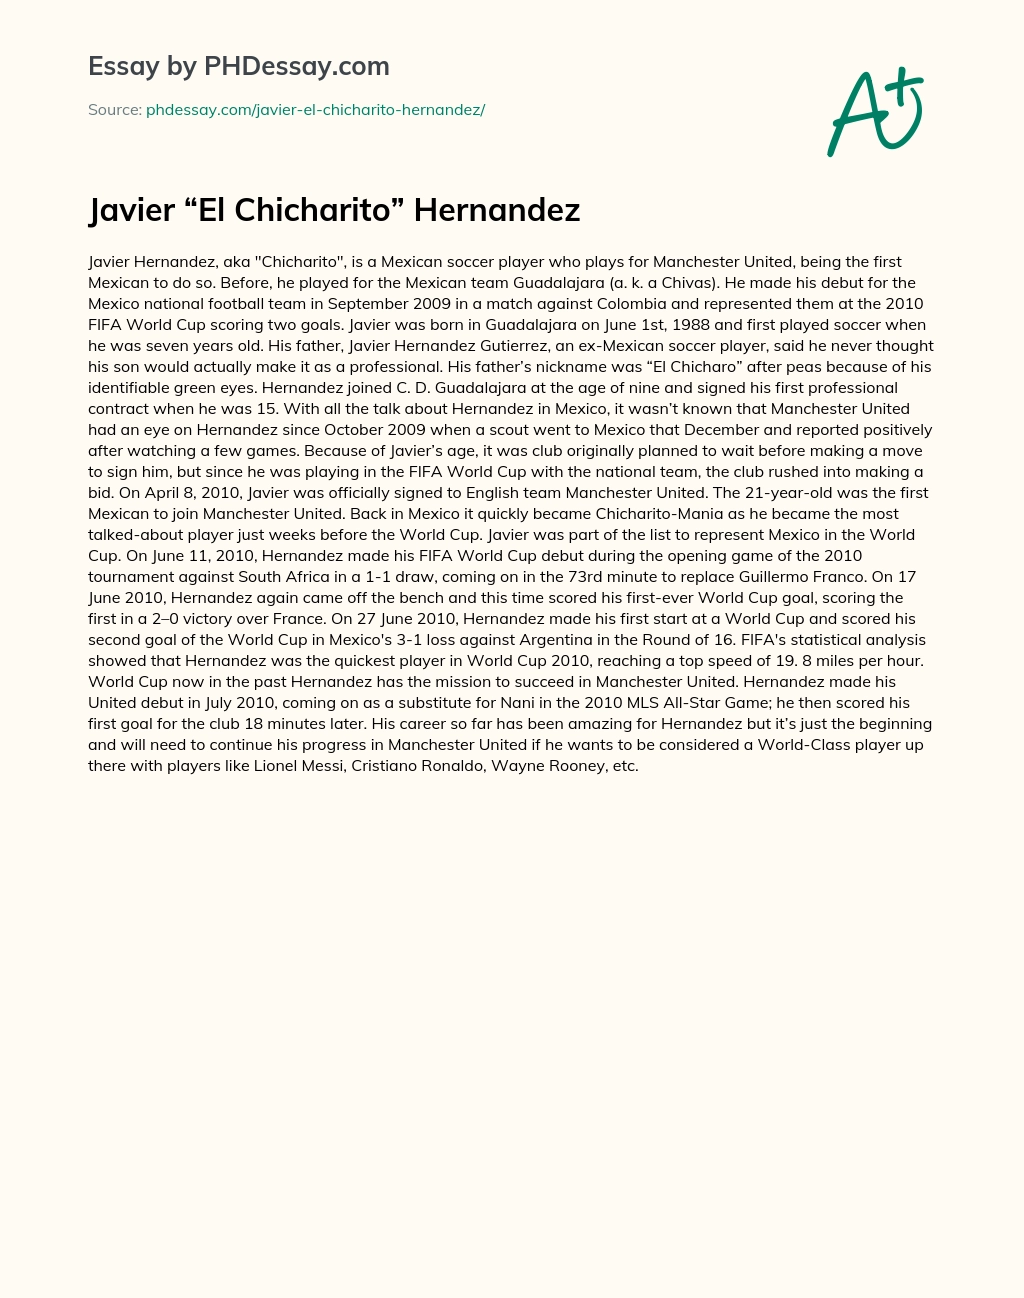 Javier “El Chicharito” Hernandez essay